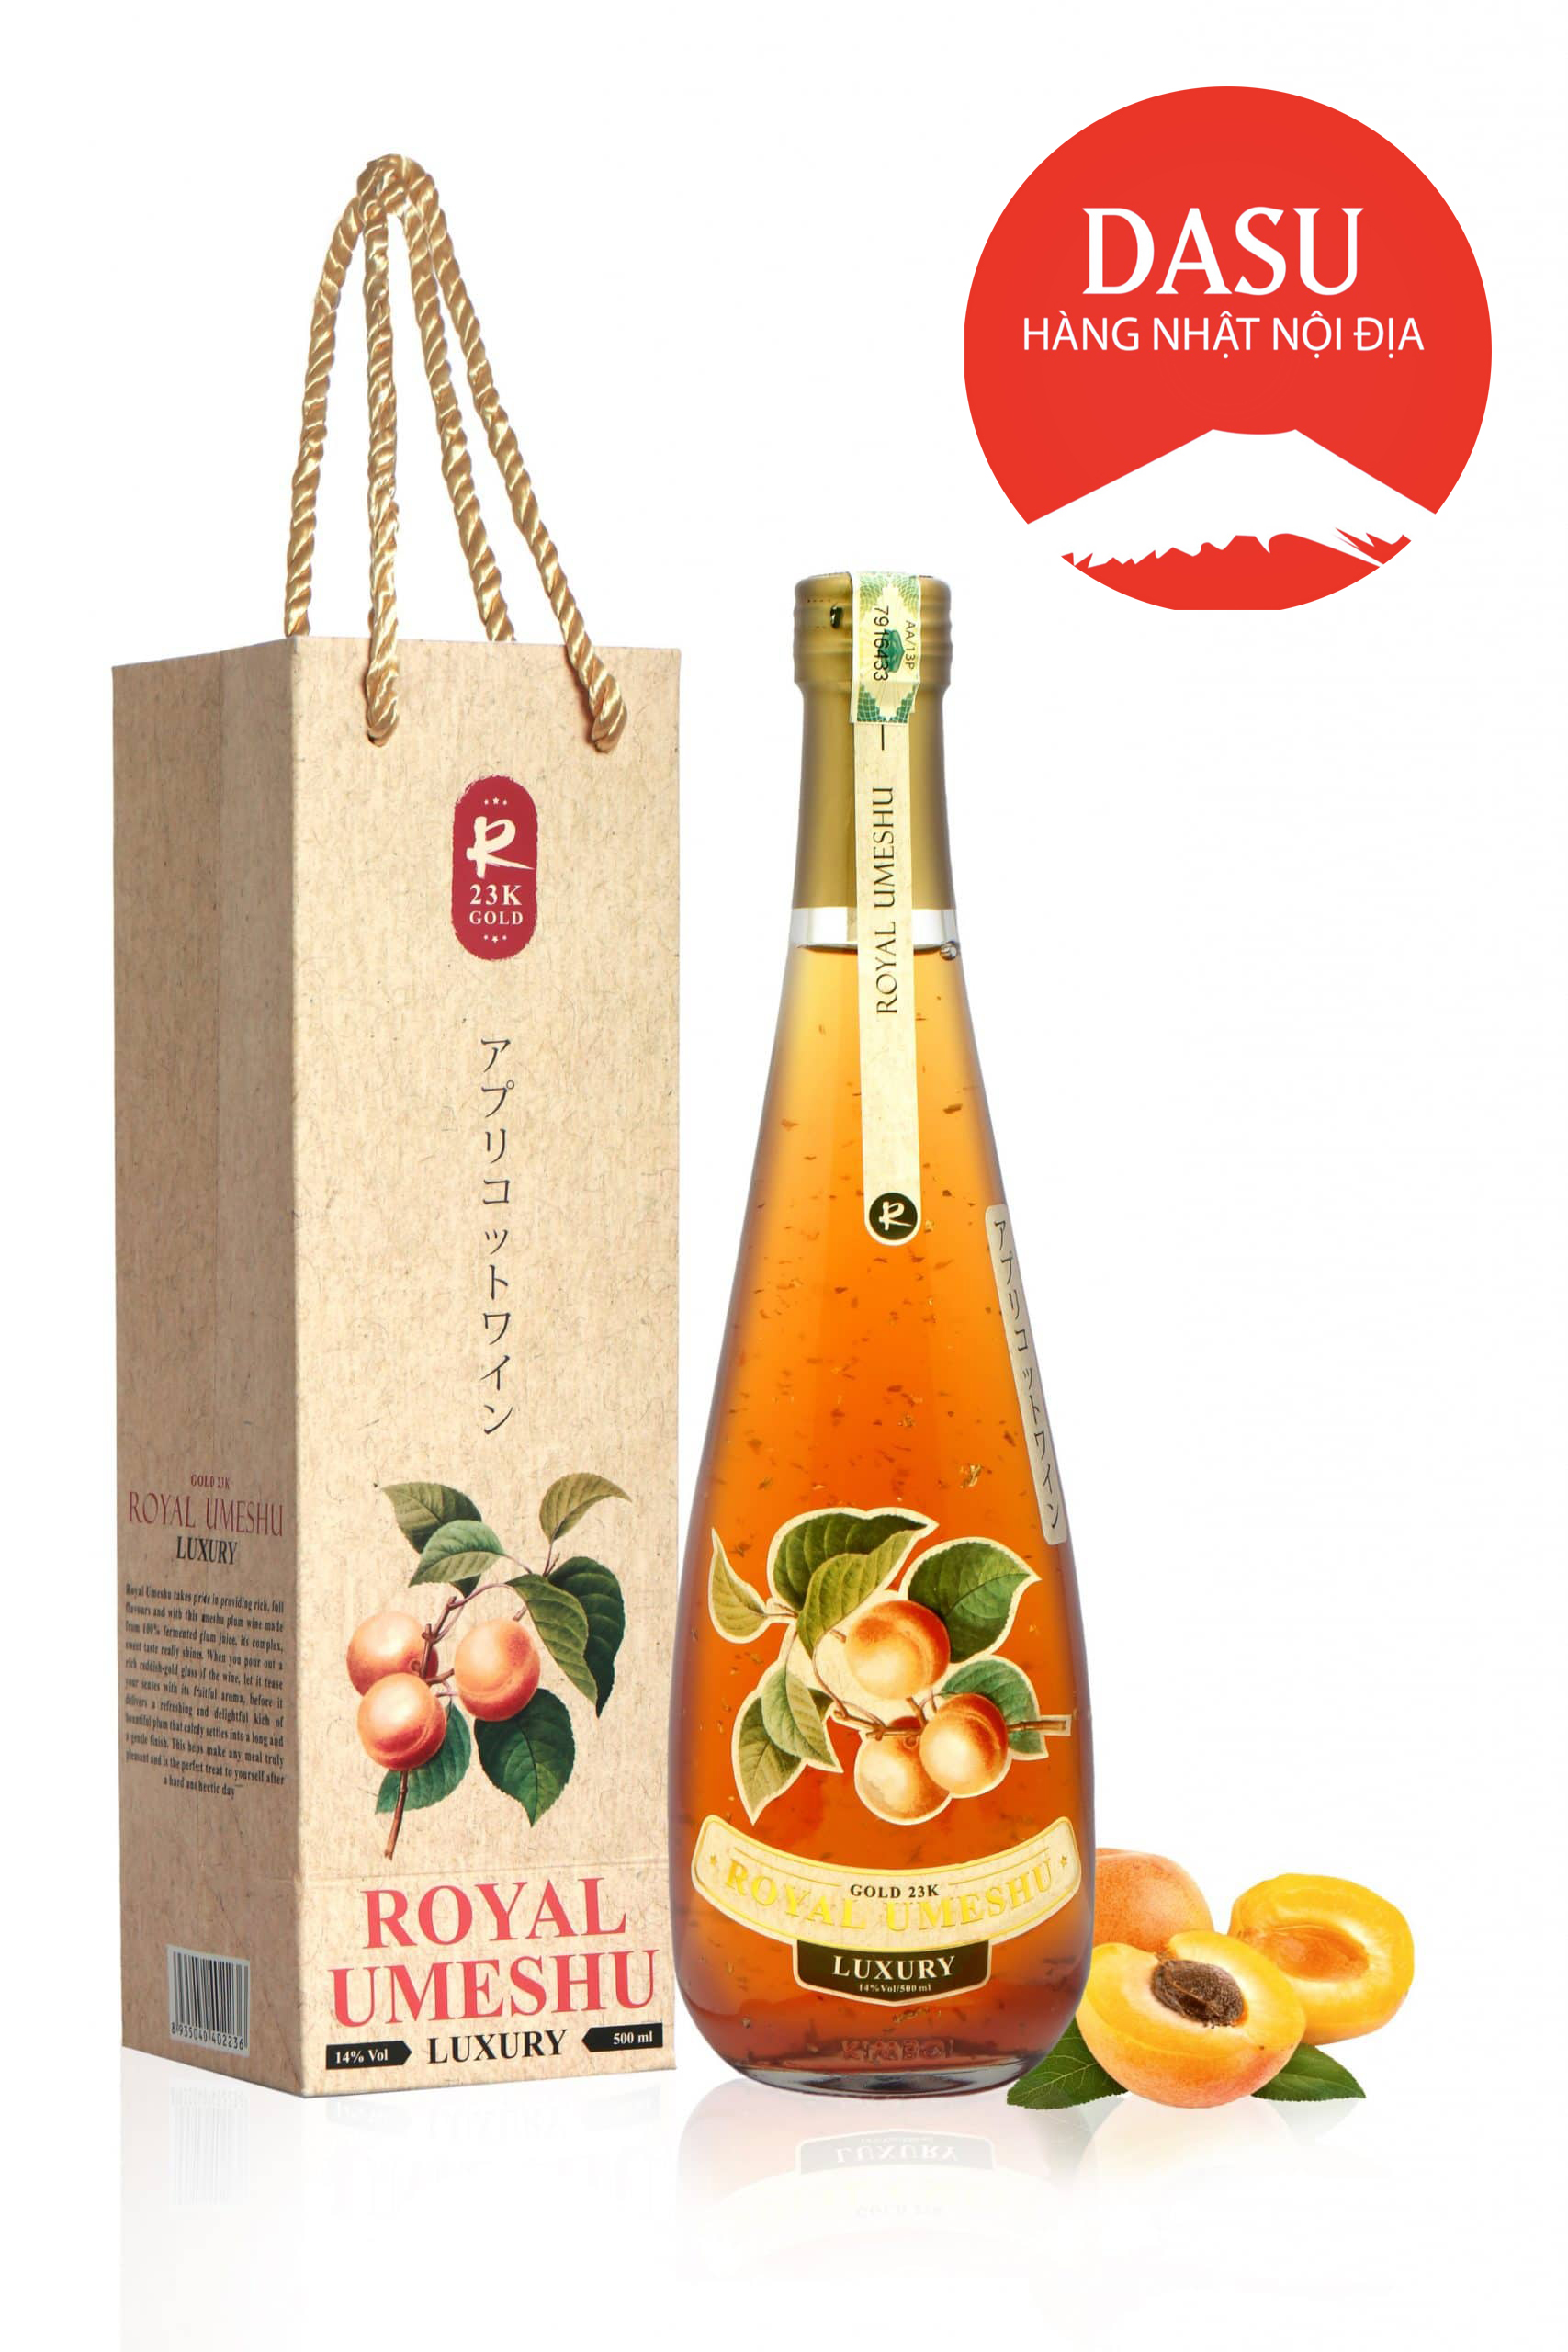 Royal Umeshu rượu mơ vảy vàng Nhật